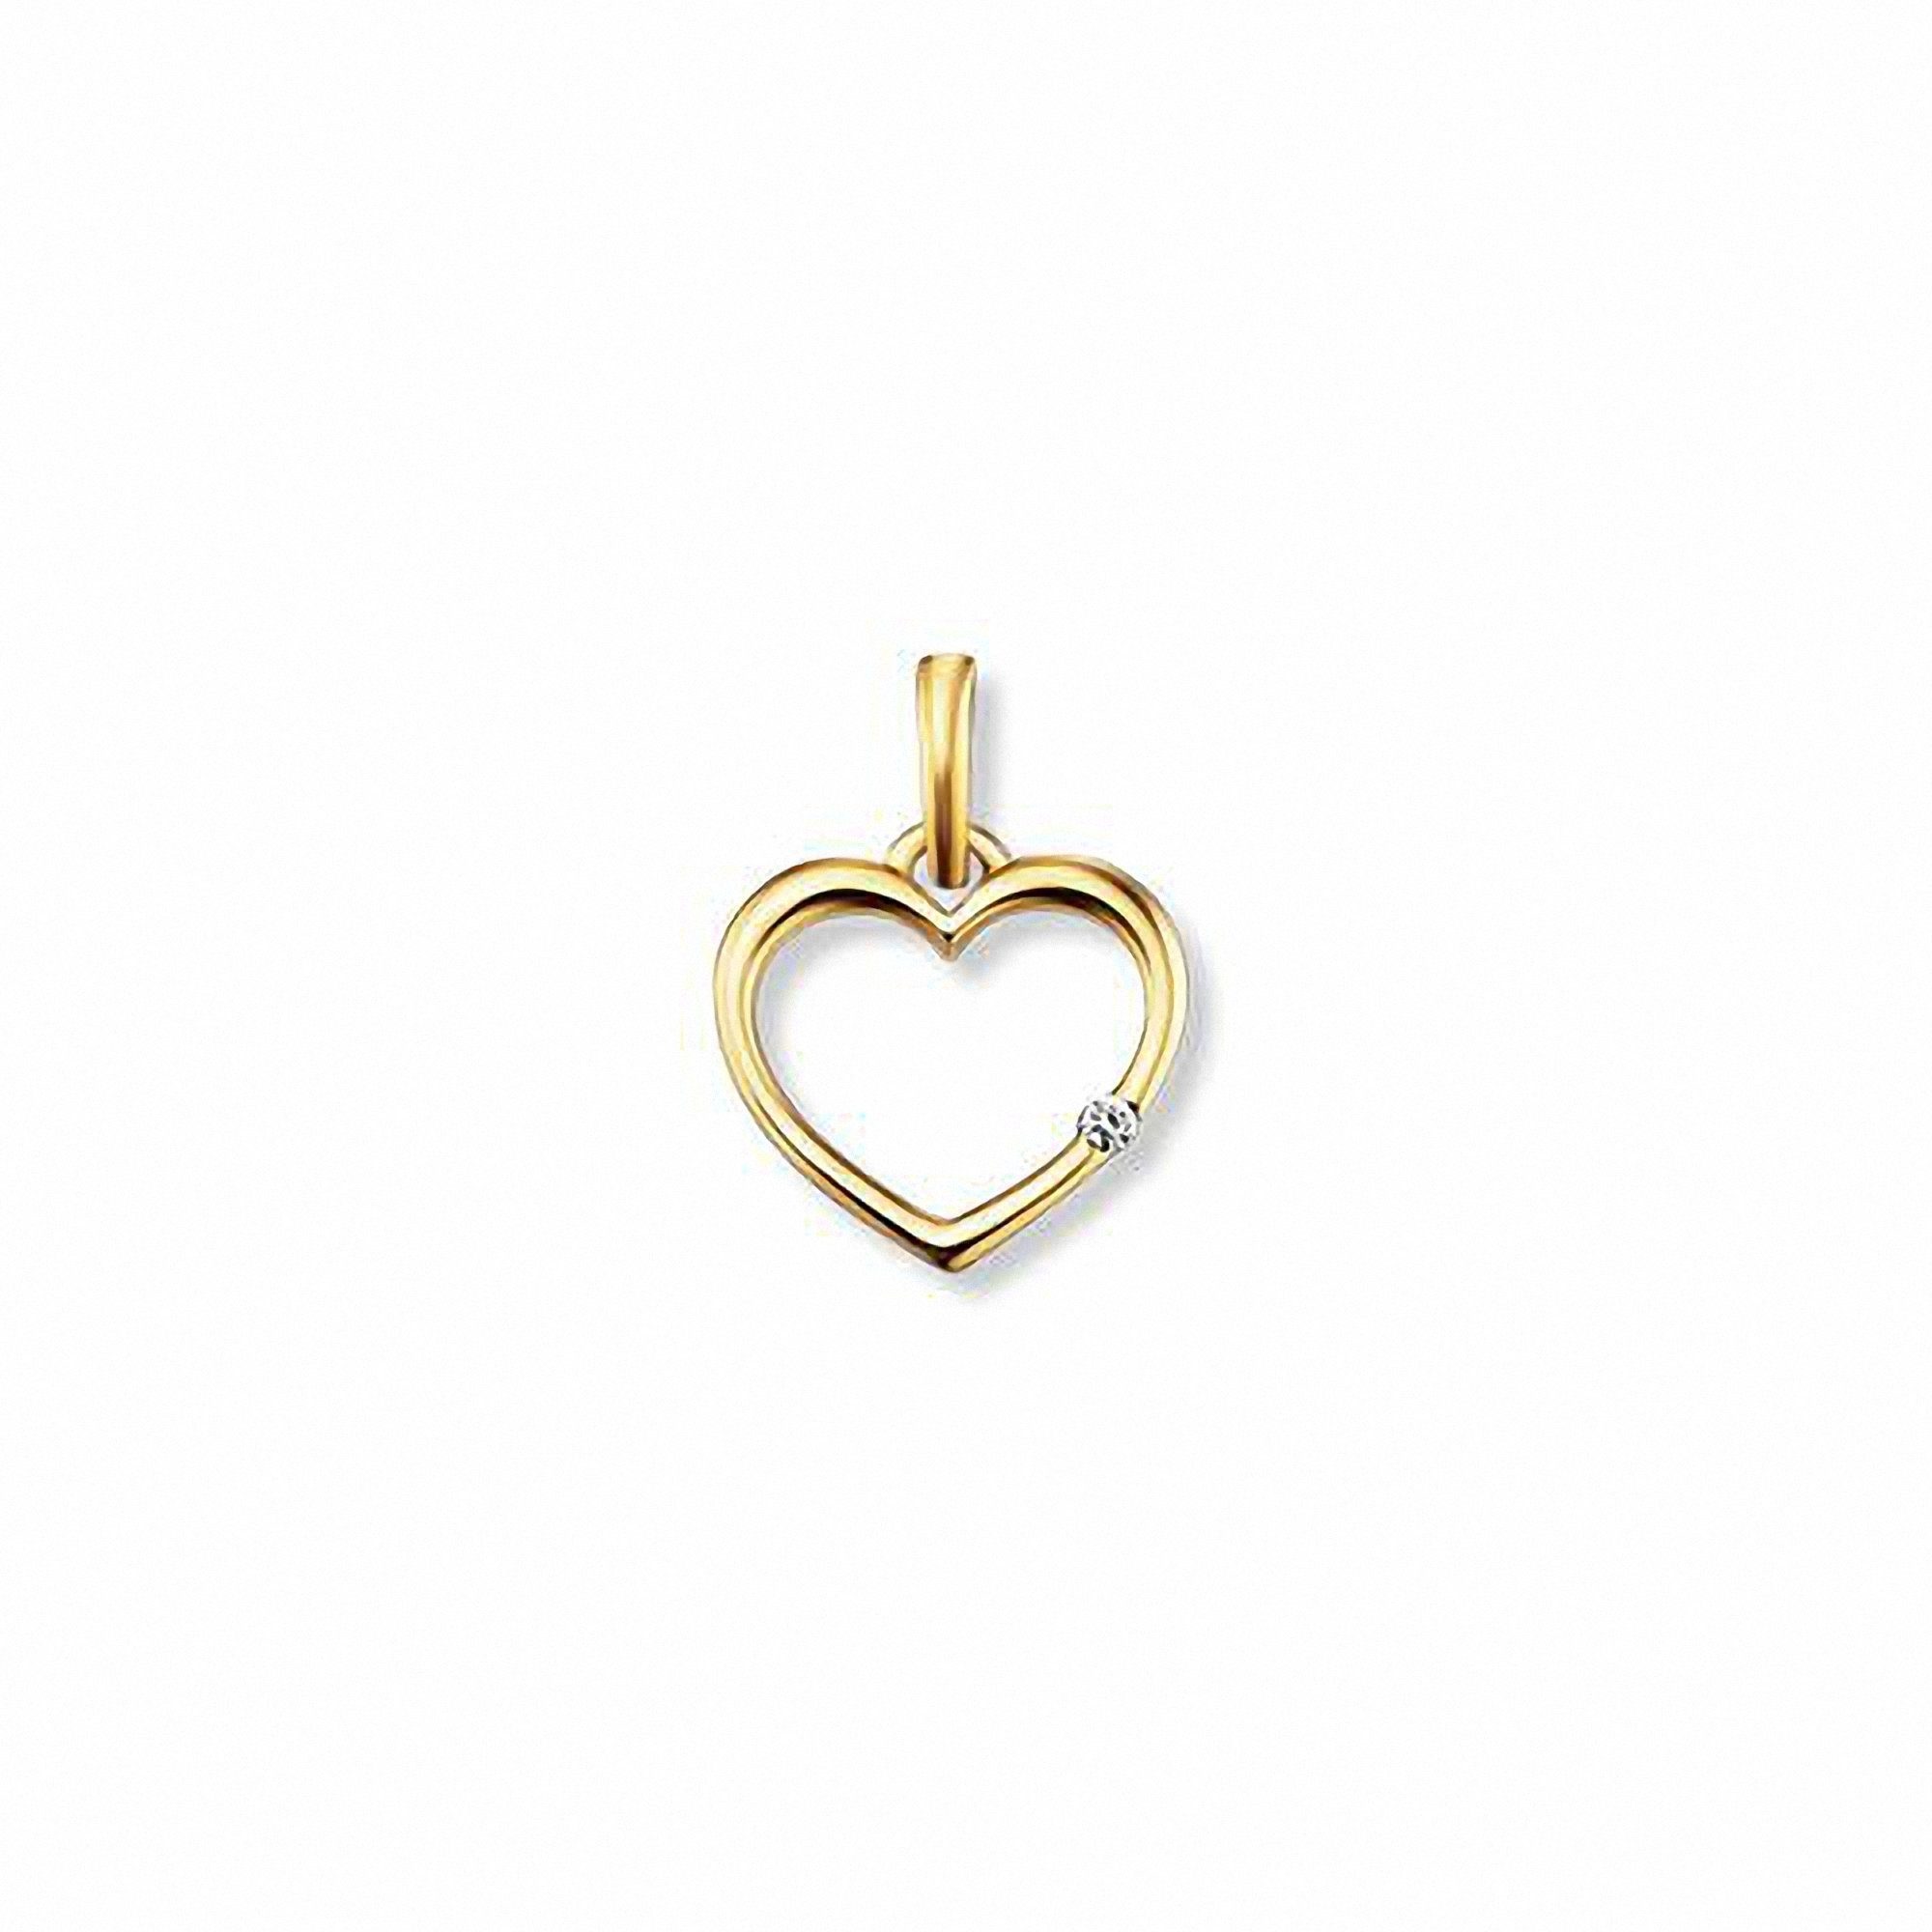 ONE ELEMENT Kettenanhänger 0.01 ct Diamant Brillant Herz Anhänger aus 585 Gelbgold, Damen Gold Schmuck Herz